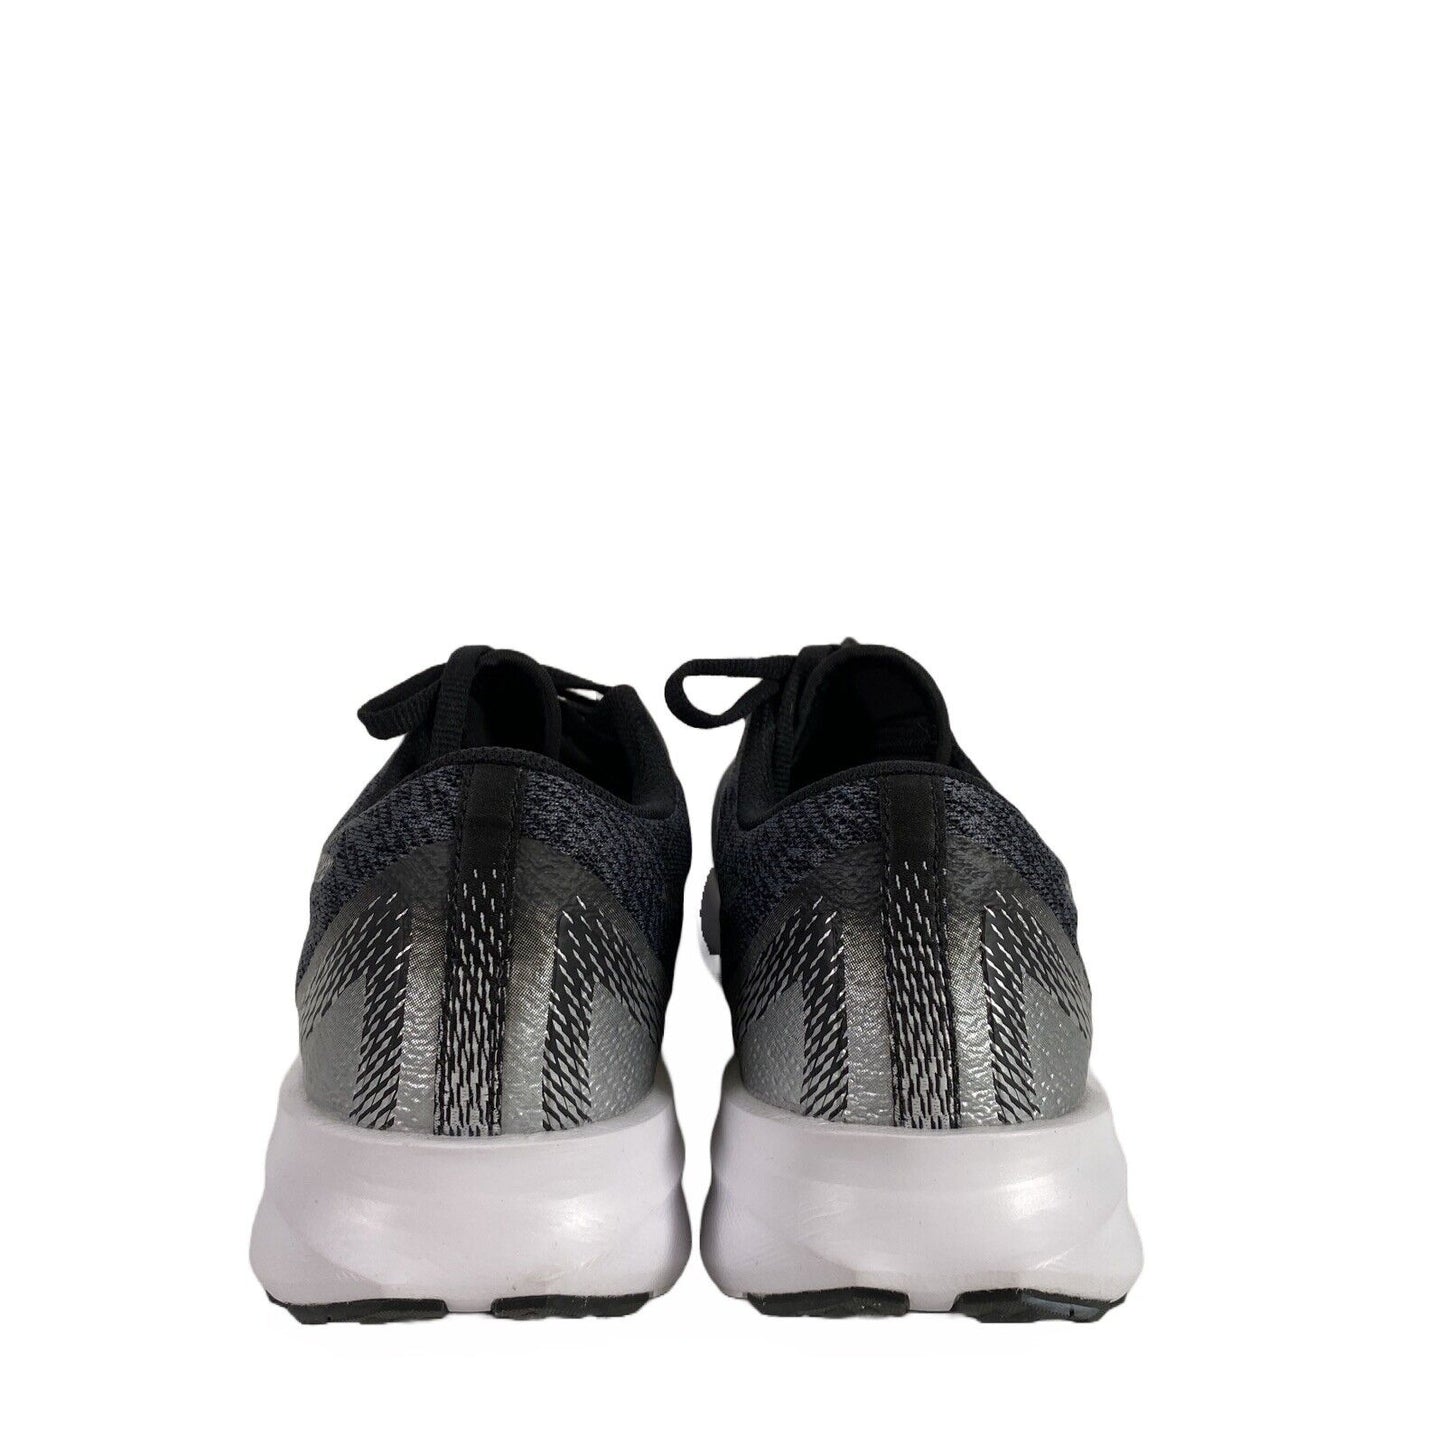 Asics Versablast - Zapatos deportivos con cordones para mujer, color gris oscuro, 9,5